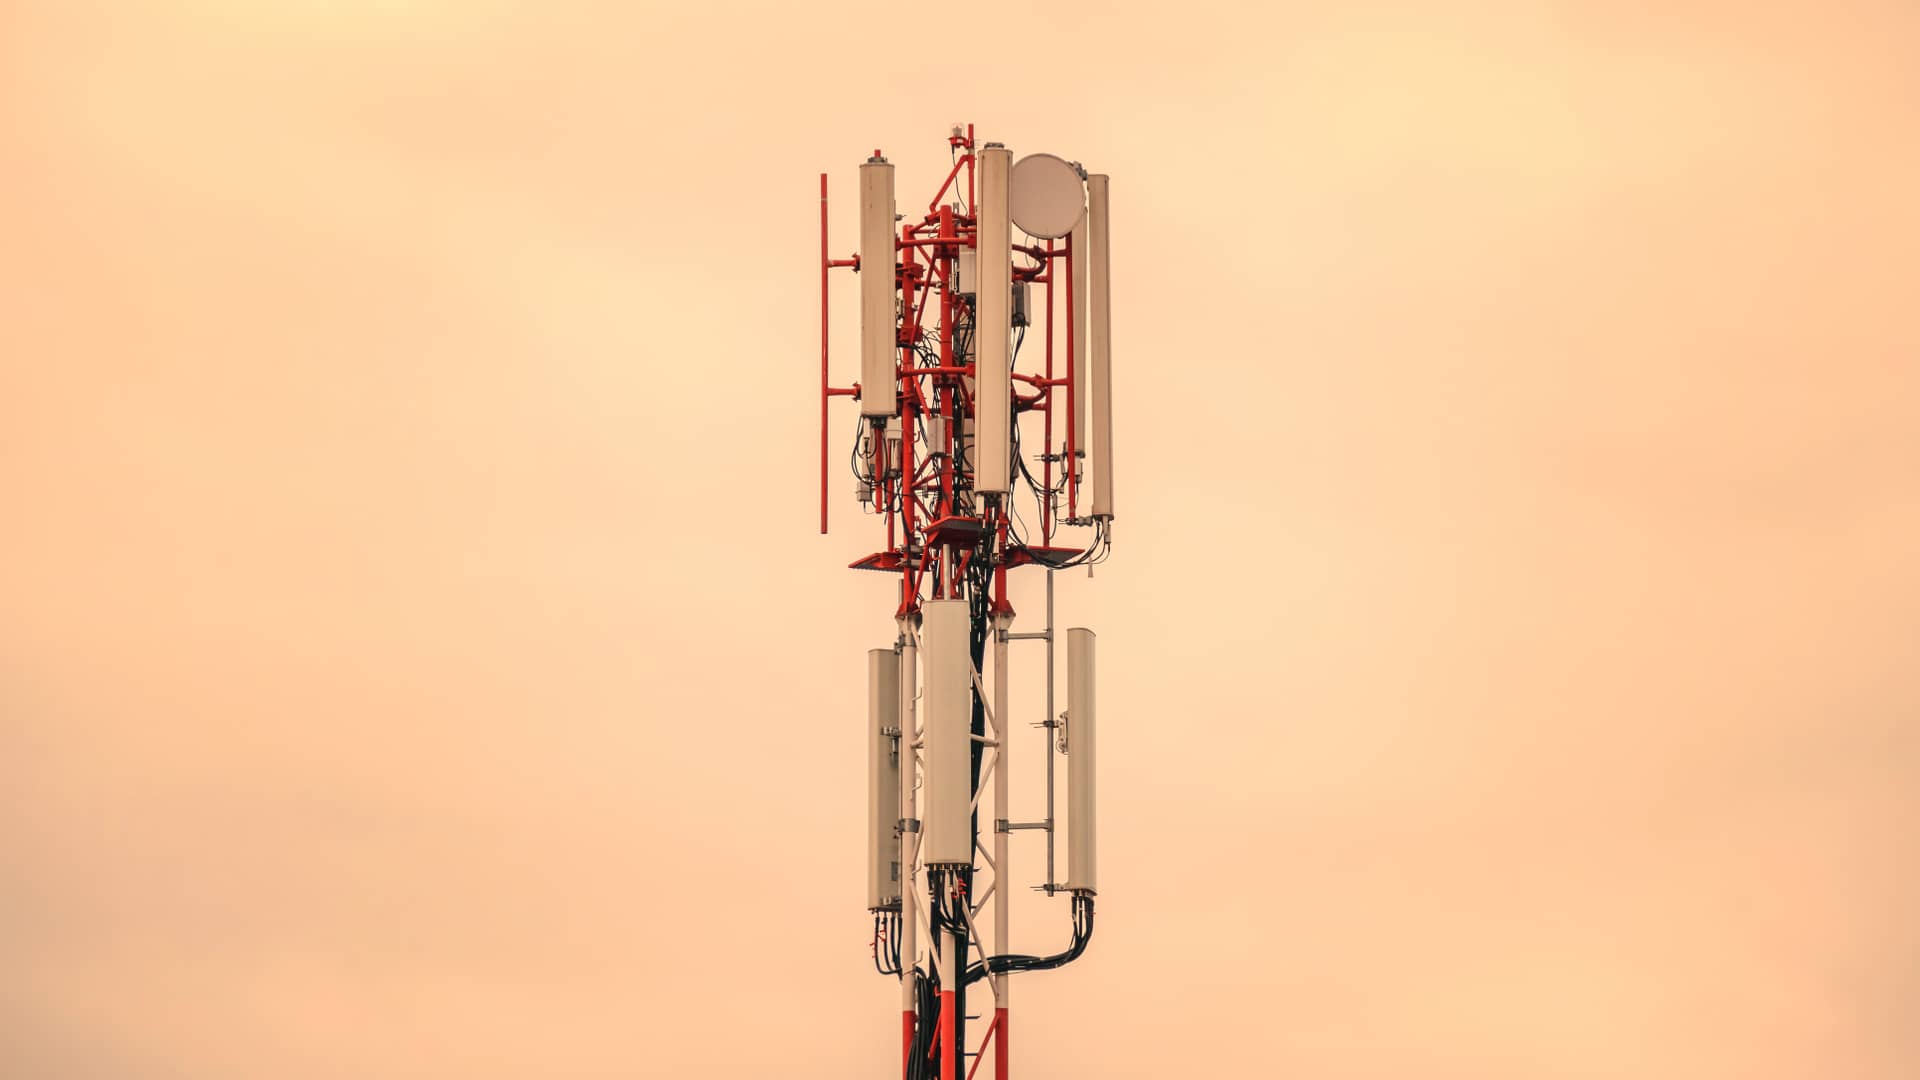 Torre de telefonía de redes celulares con cielo sepia, representa la cobertura de wizz plus